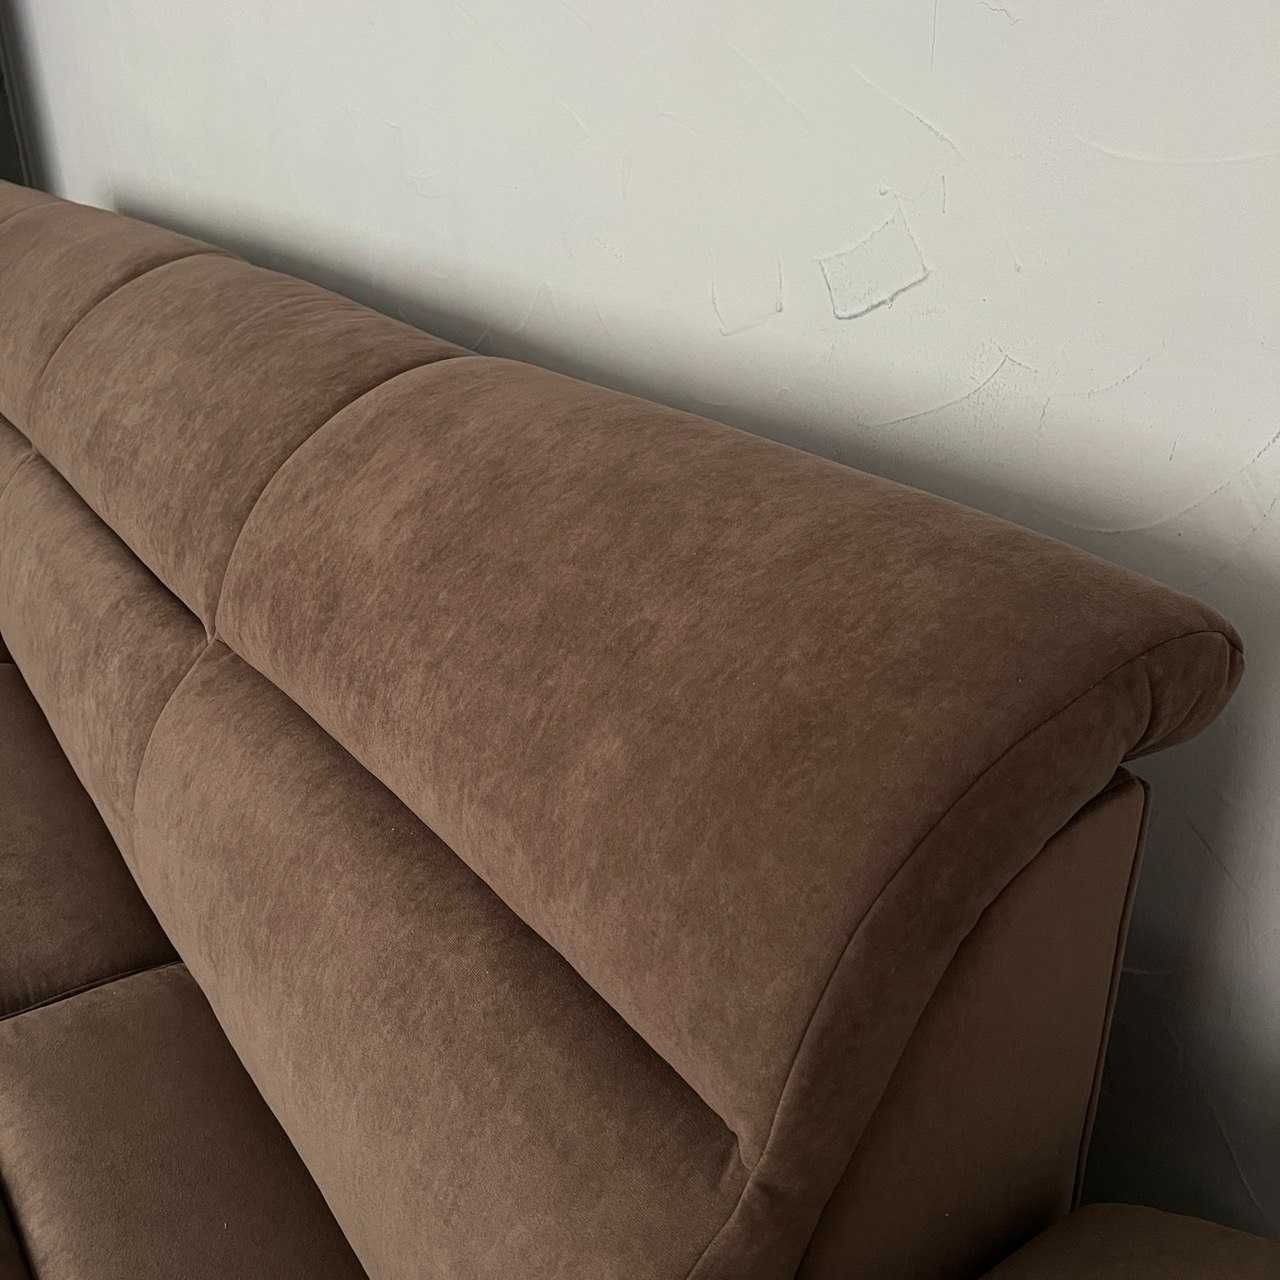 Новий диван в тканині коричневий «Бестселер»